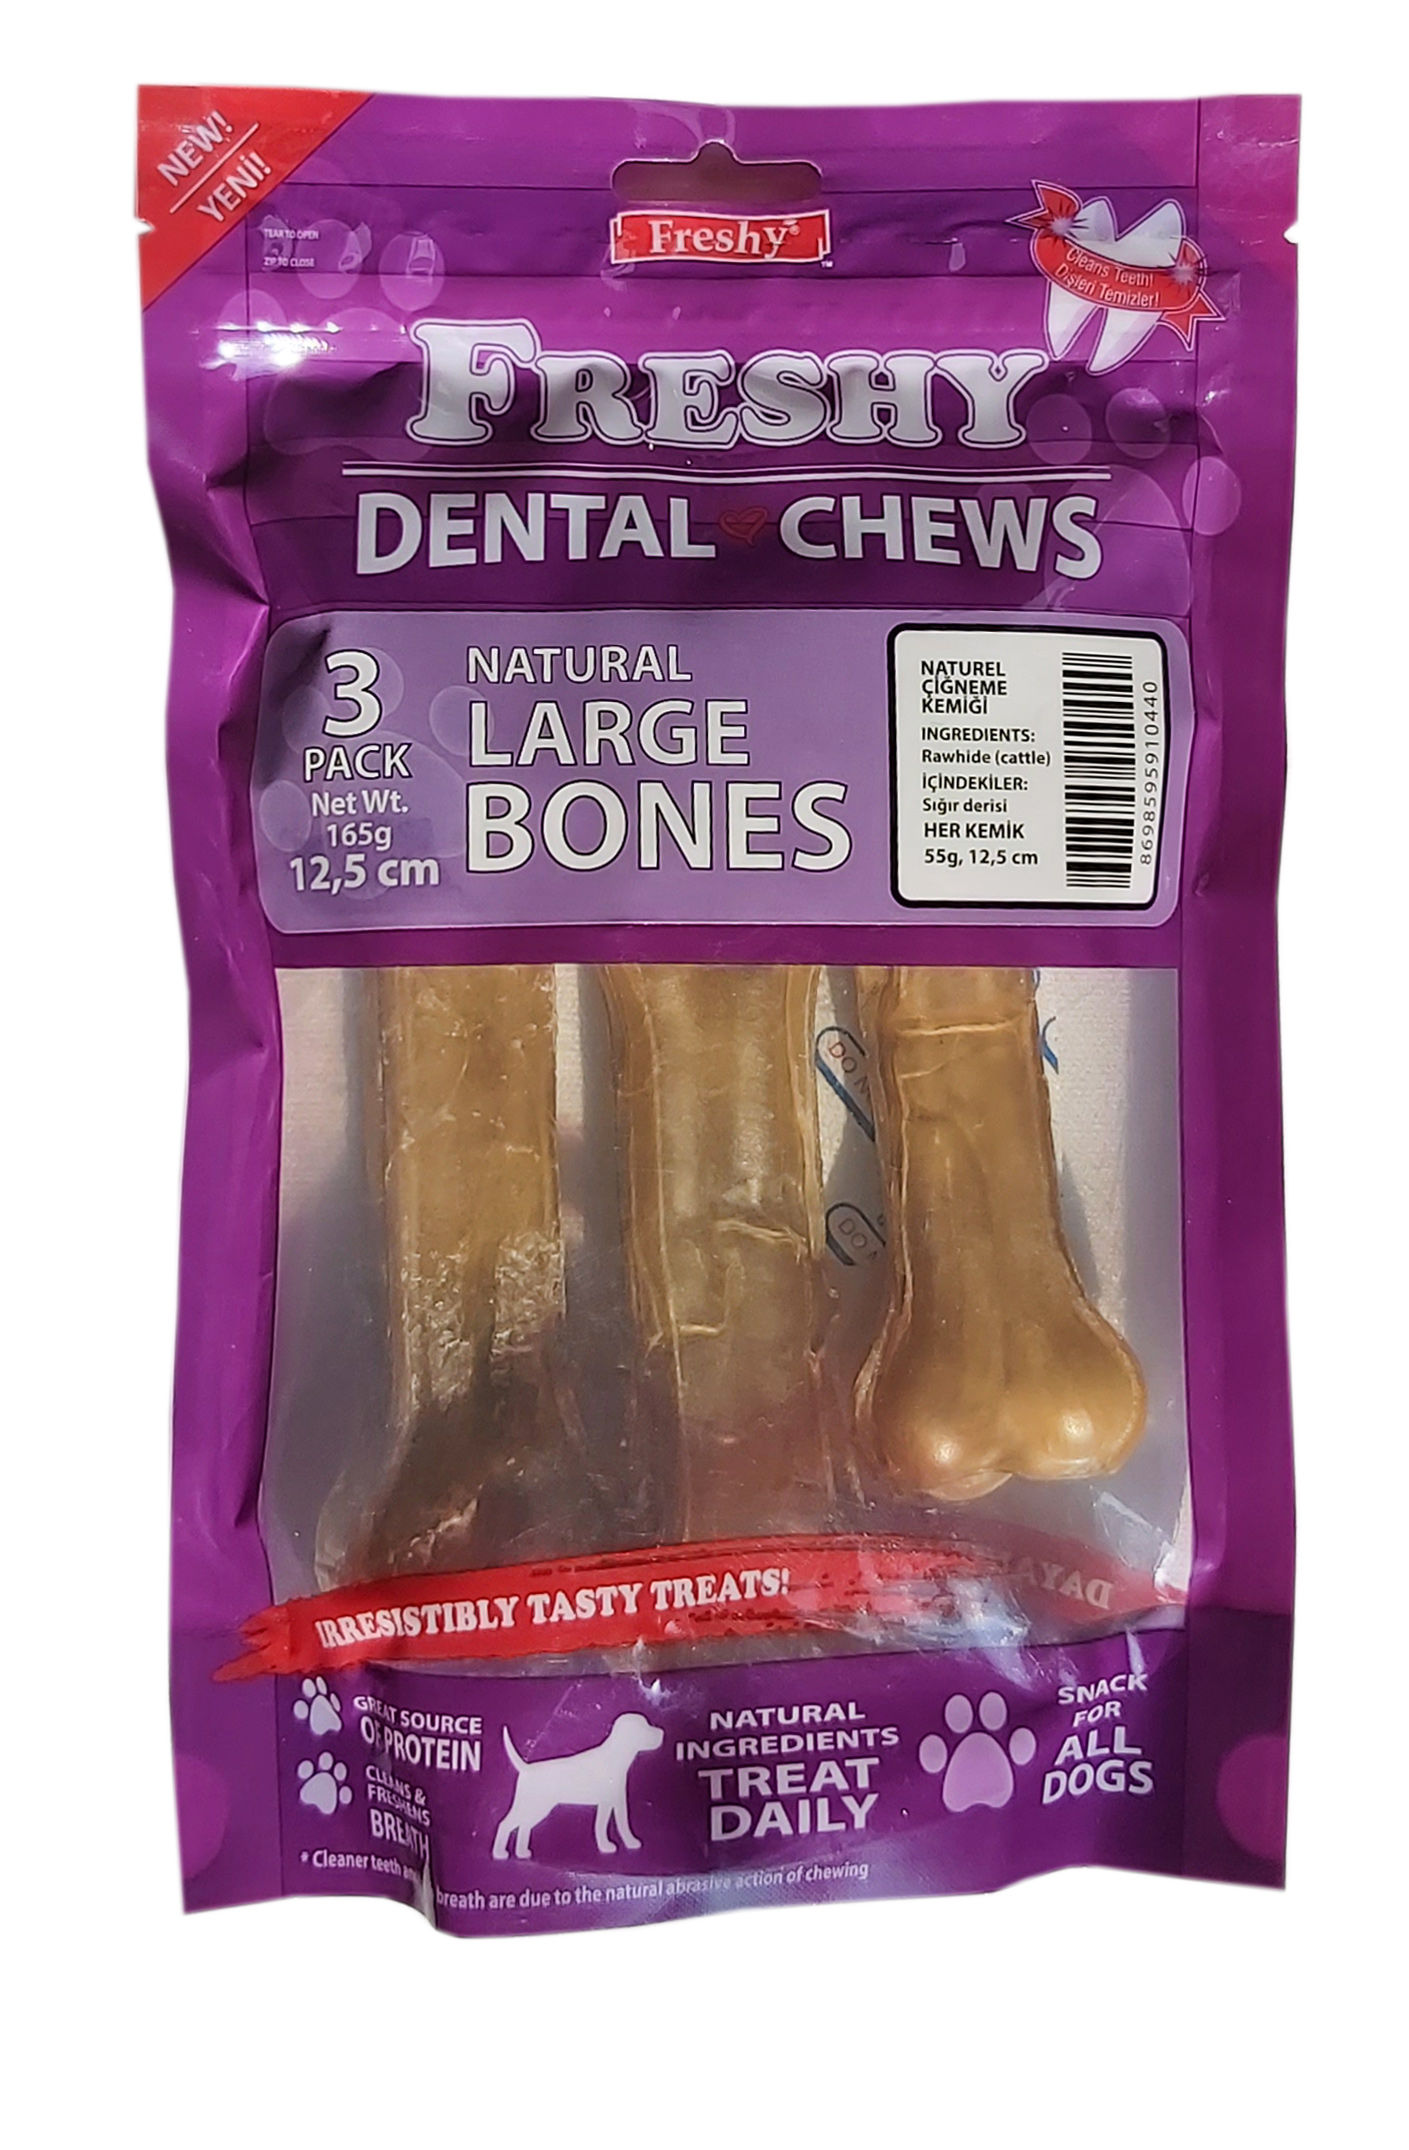 Freshy Büyük Boy Natürel Dental Kemik 12,5 Santim 5 3'lü Paket Toplam 165 Gram